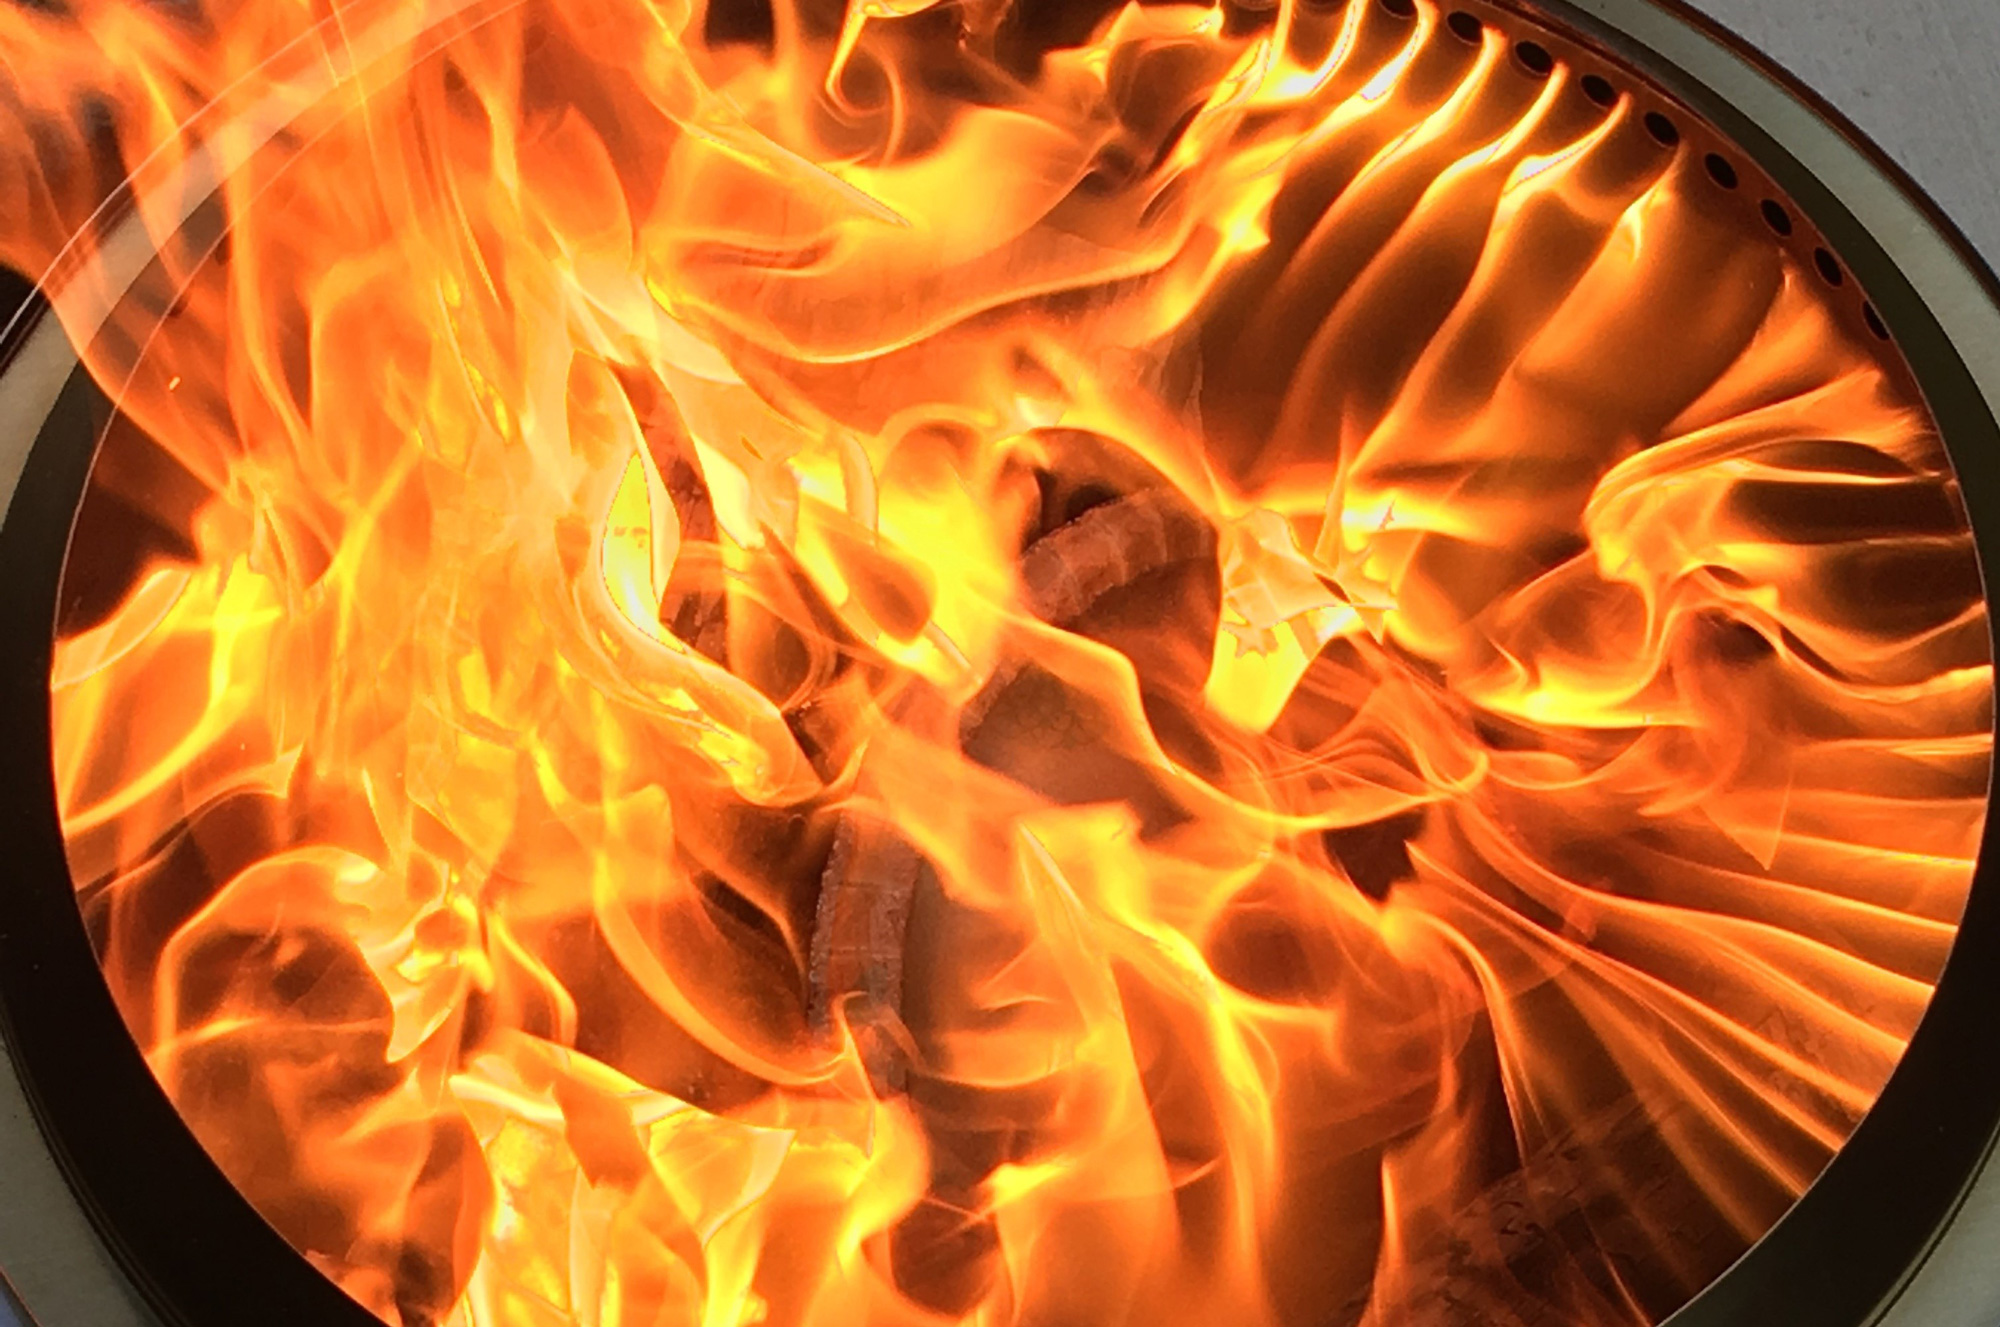 誰でも安全に美しい炎を。焚き火界のユニバーサルデザイン。